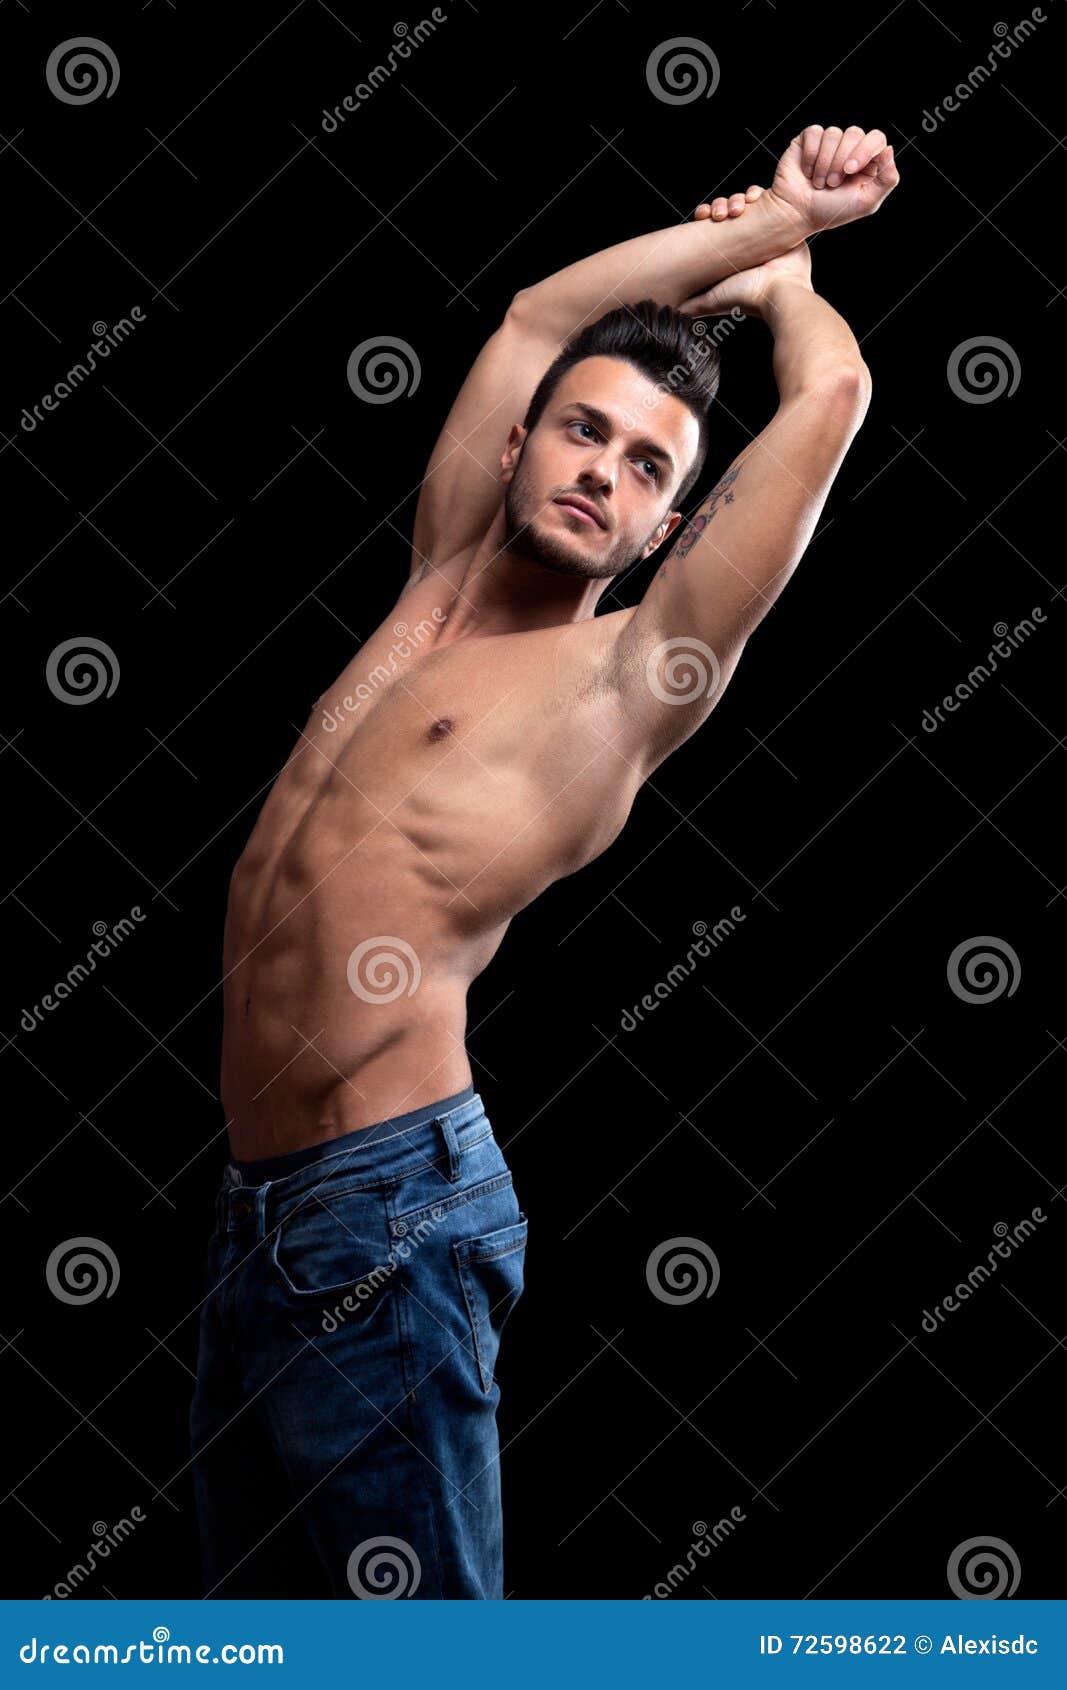 Torso Masculino Muscular Foto De Archivo Imagen De Atractivo 72598622